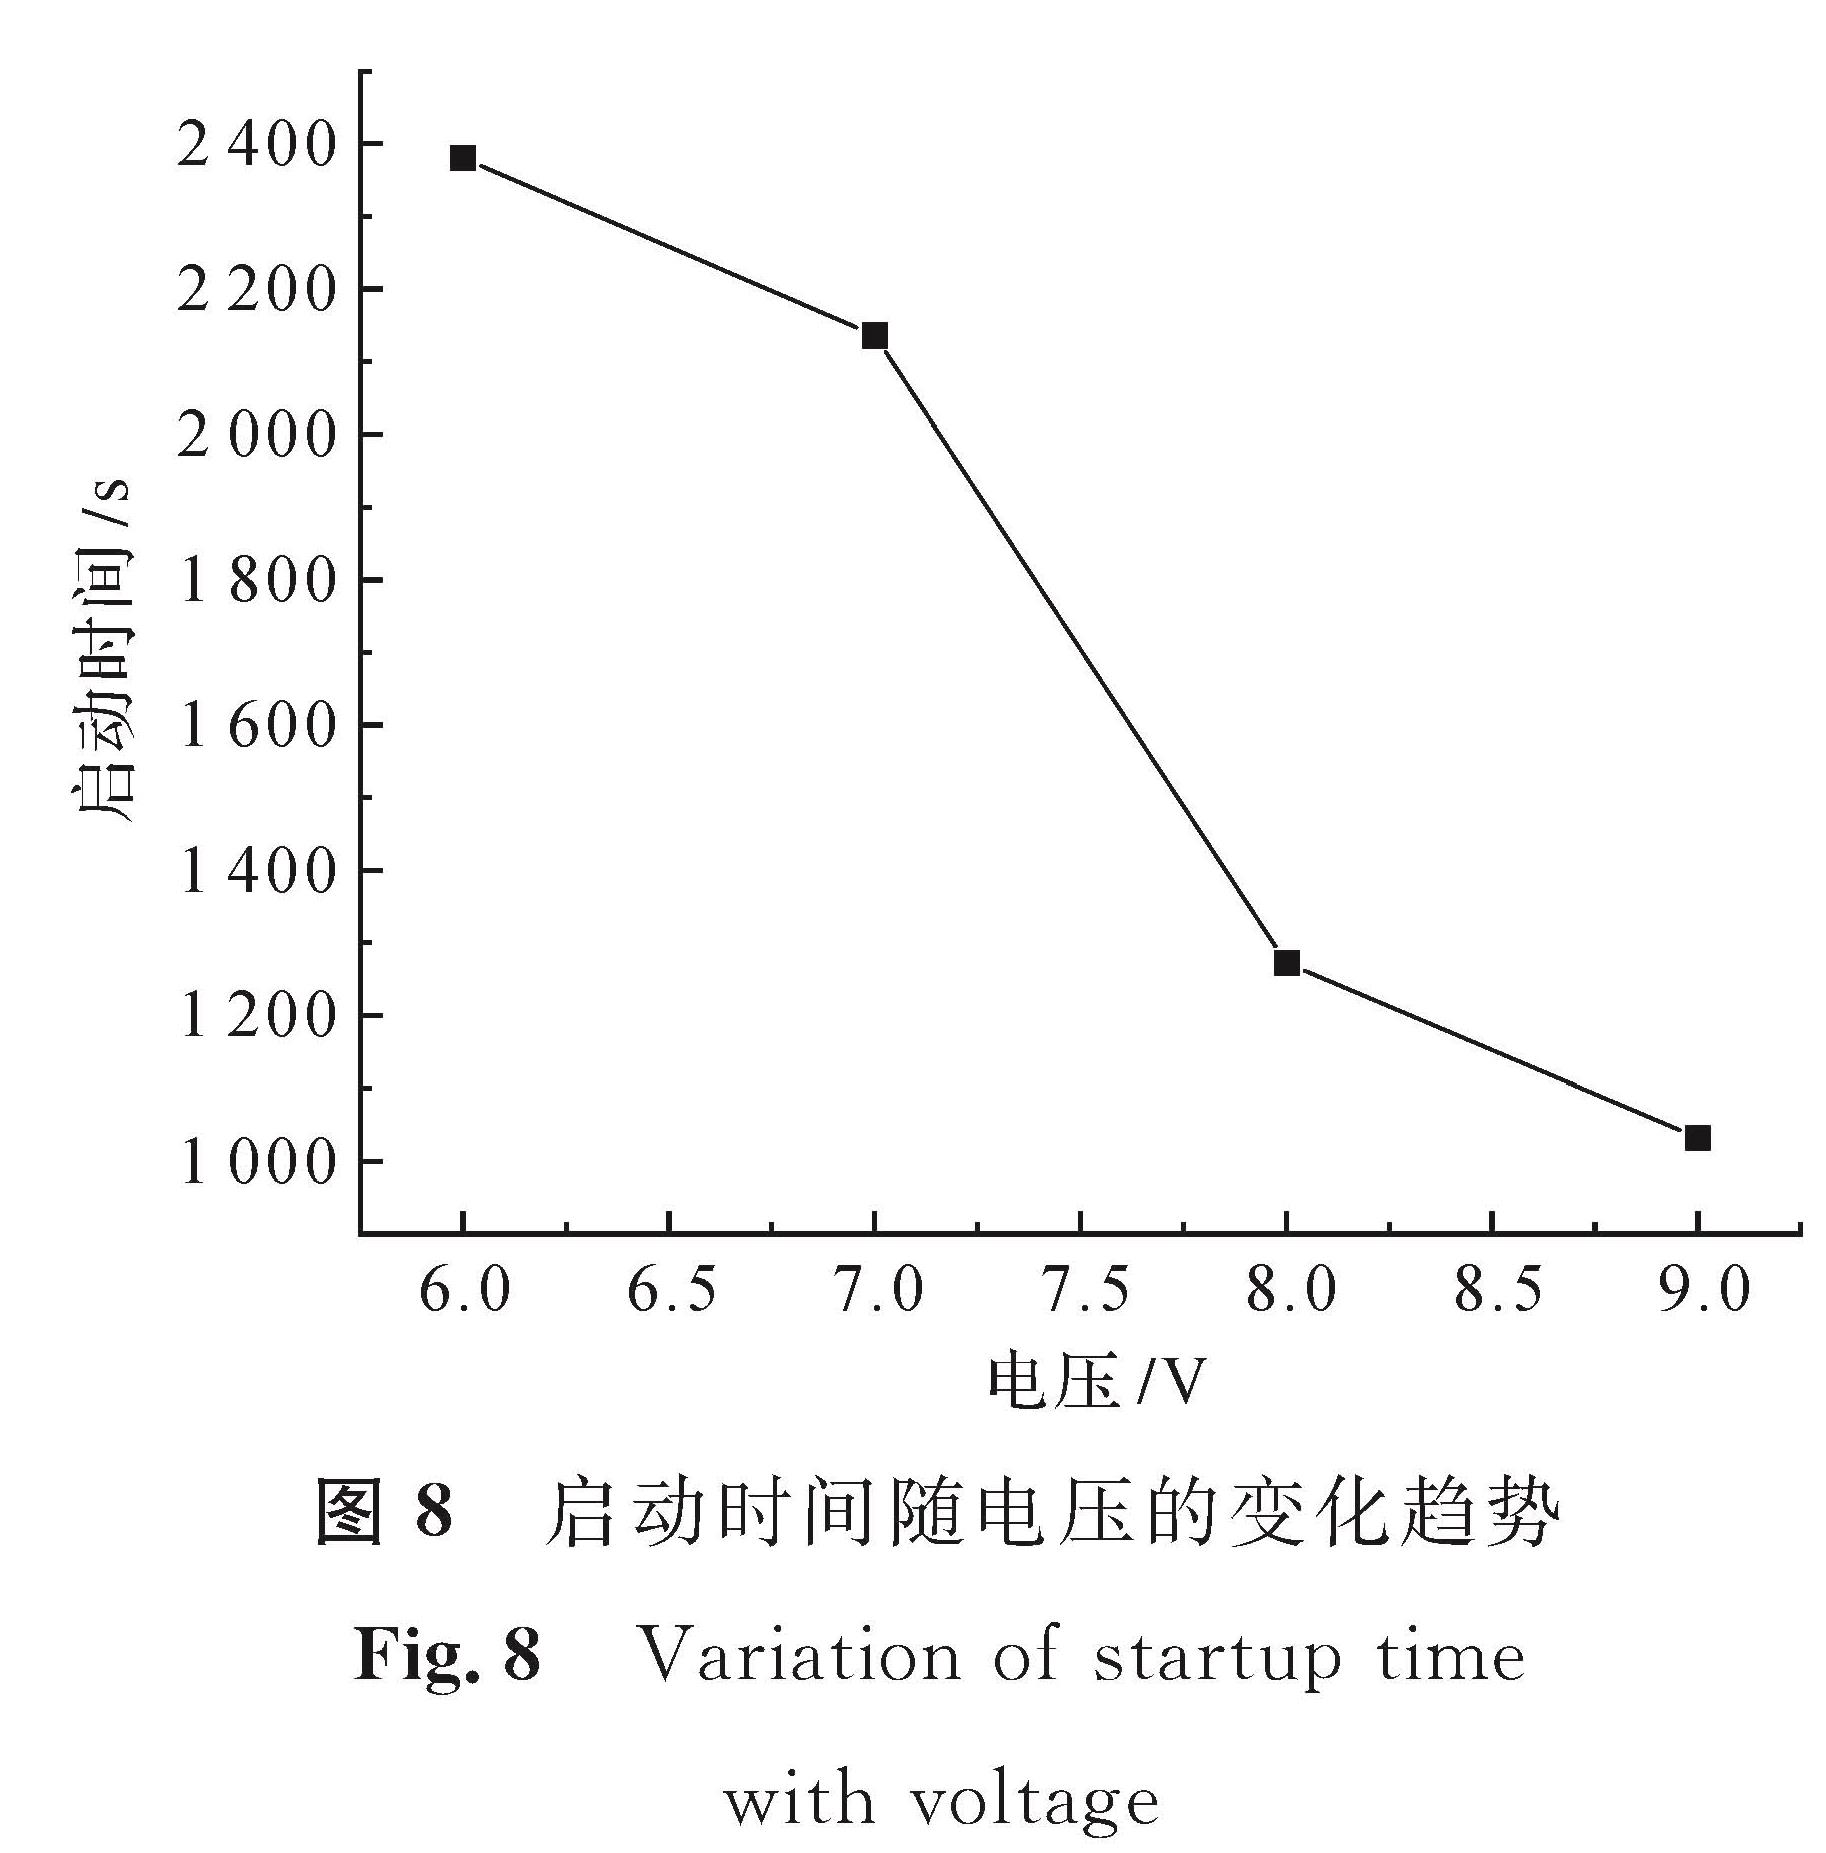 图8 启动时间随电压的变化趋势<br/>Fig.8 Variation of startup time with voltage